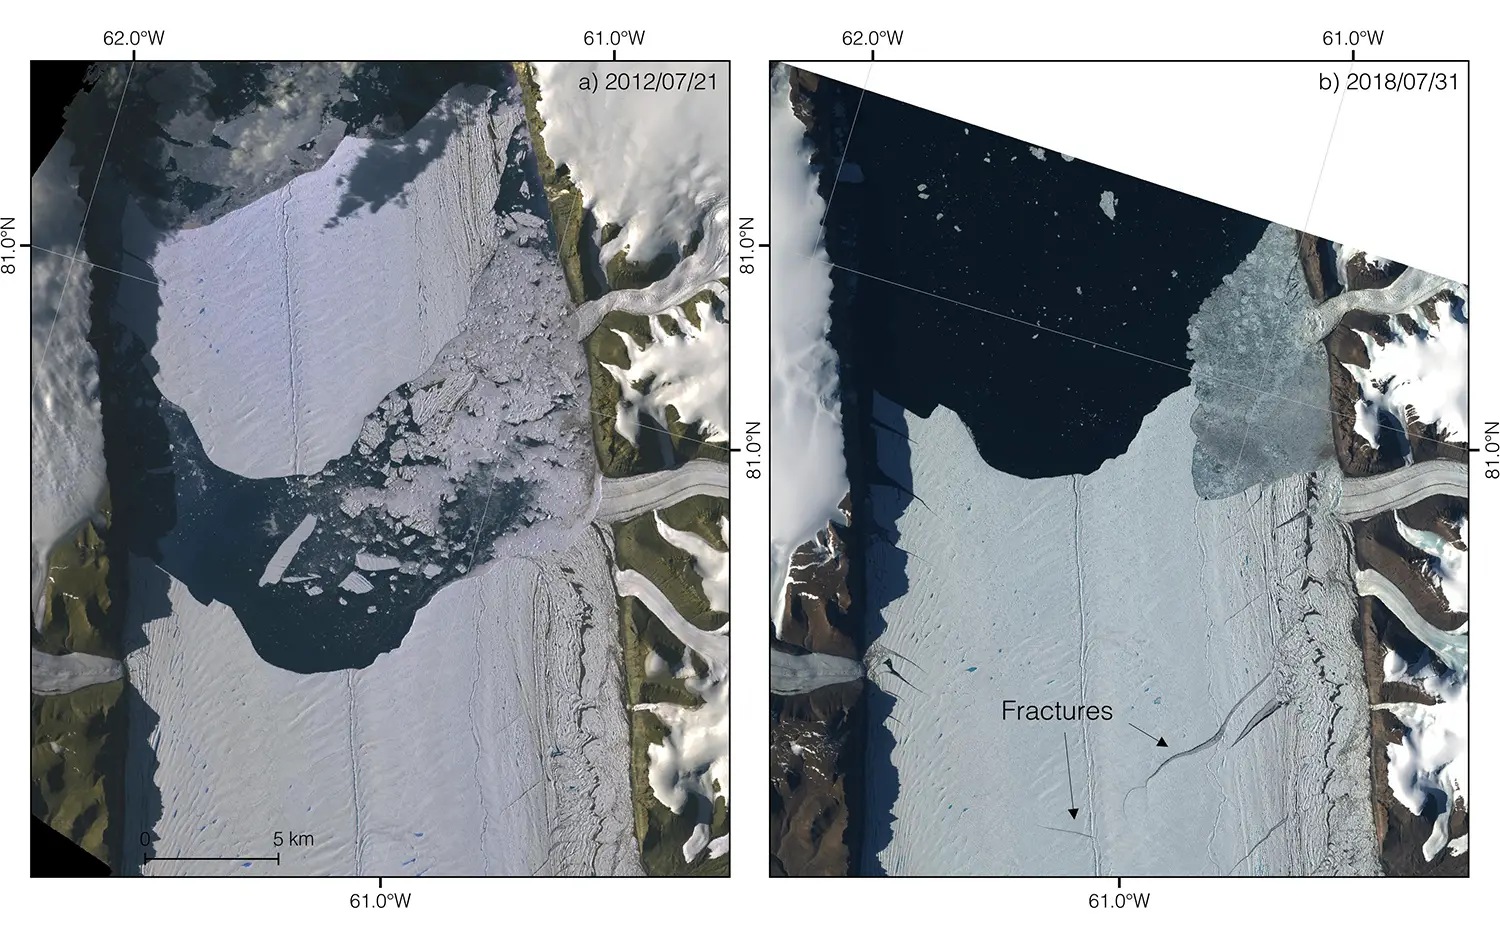 À gauche : l'image satellite ASTER du glacier Petermann de 2012 montre l'événement de vêlage. Droite : Image Sentinel-2 prise le 31 juillet 2018, révélant de nouvelles fractures en développement.